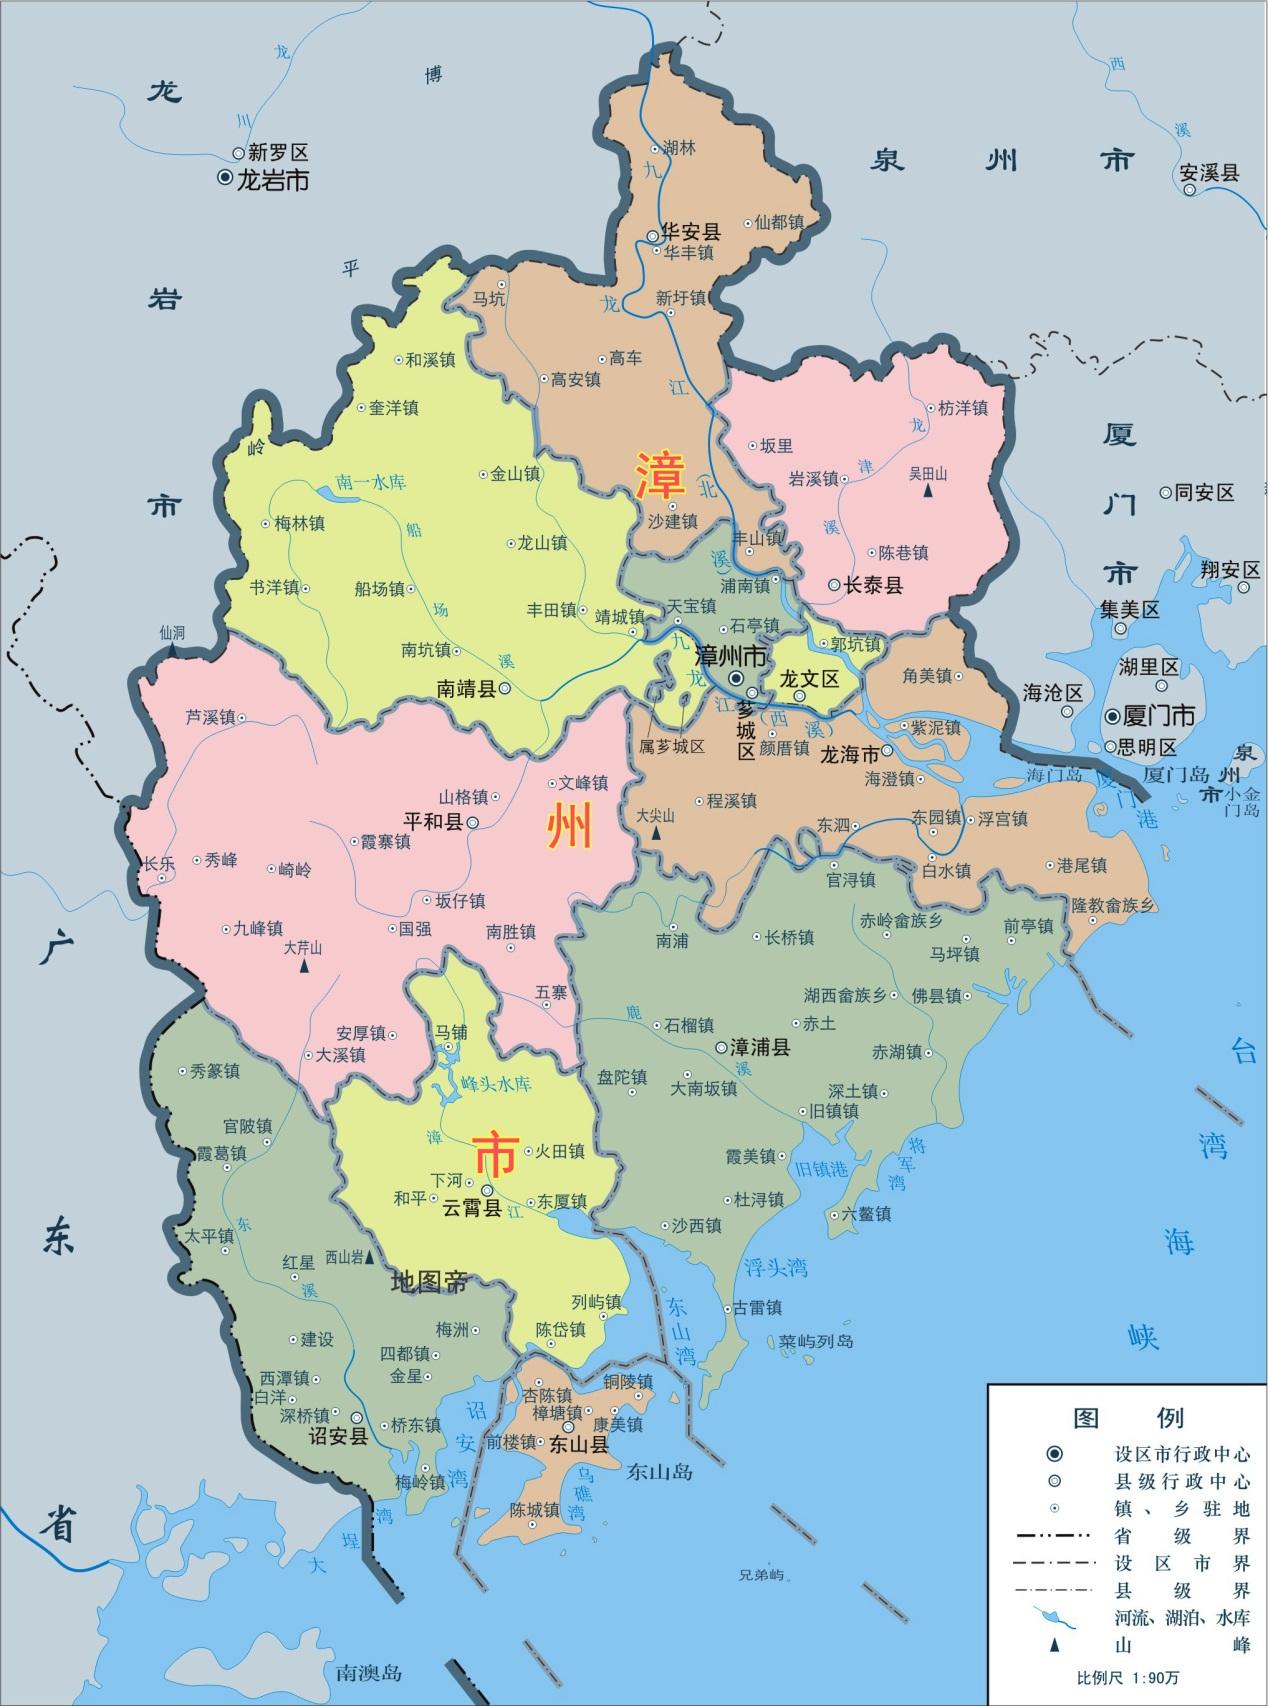 福建漳州芗城区有两块飞地,在南靖县境内,形状像龙